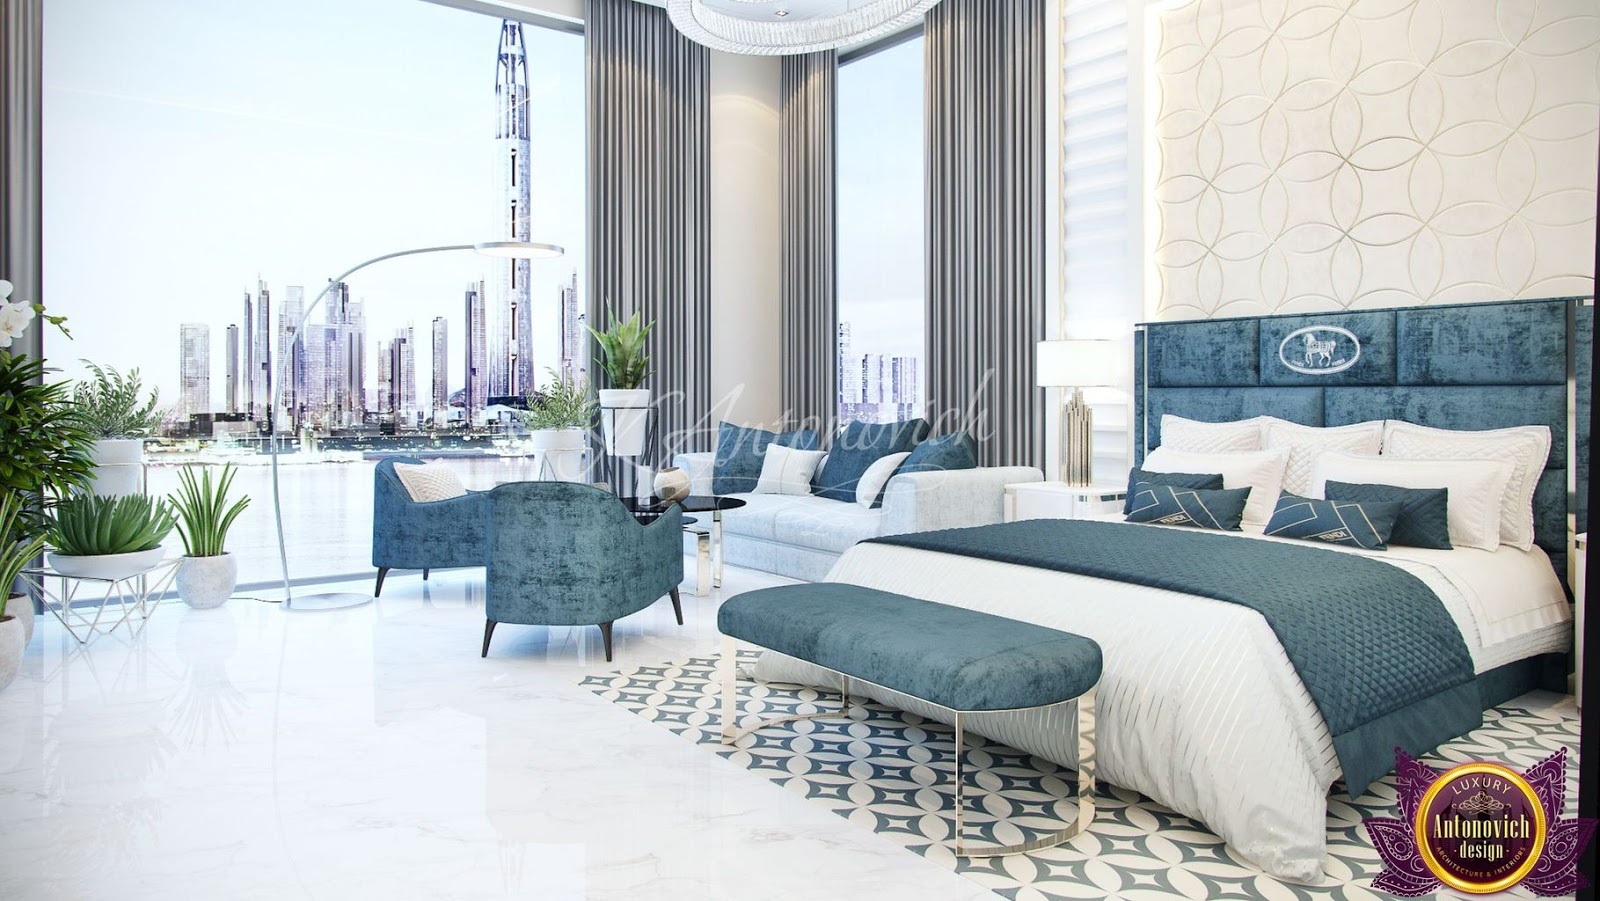 Luxury Antonovich Design Uae The Most Beautiful Bedrooms Interiors Of